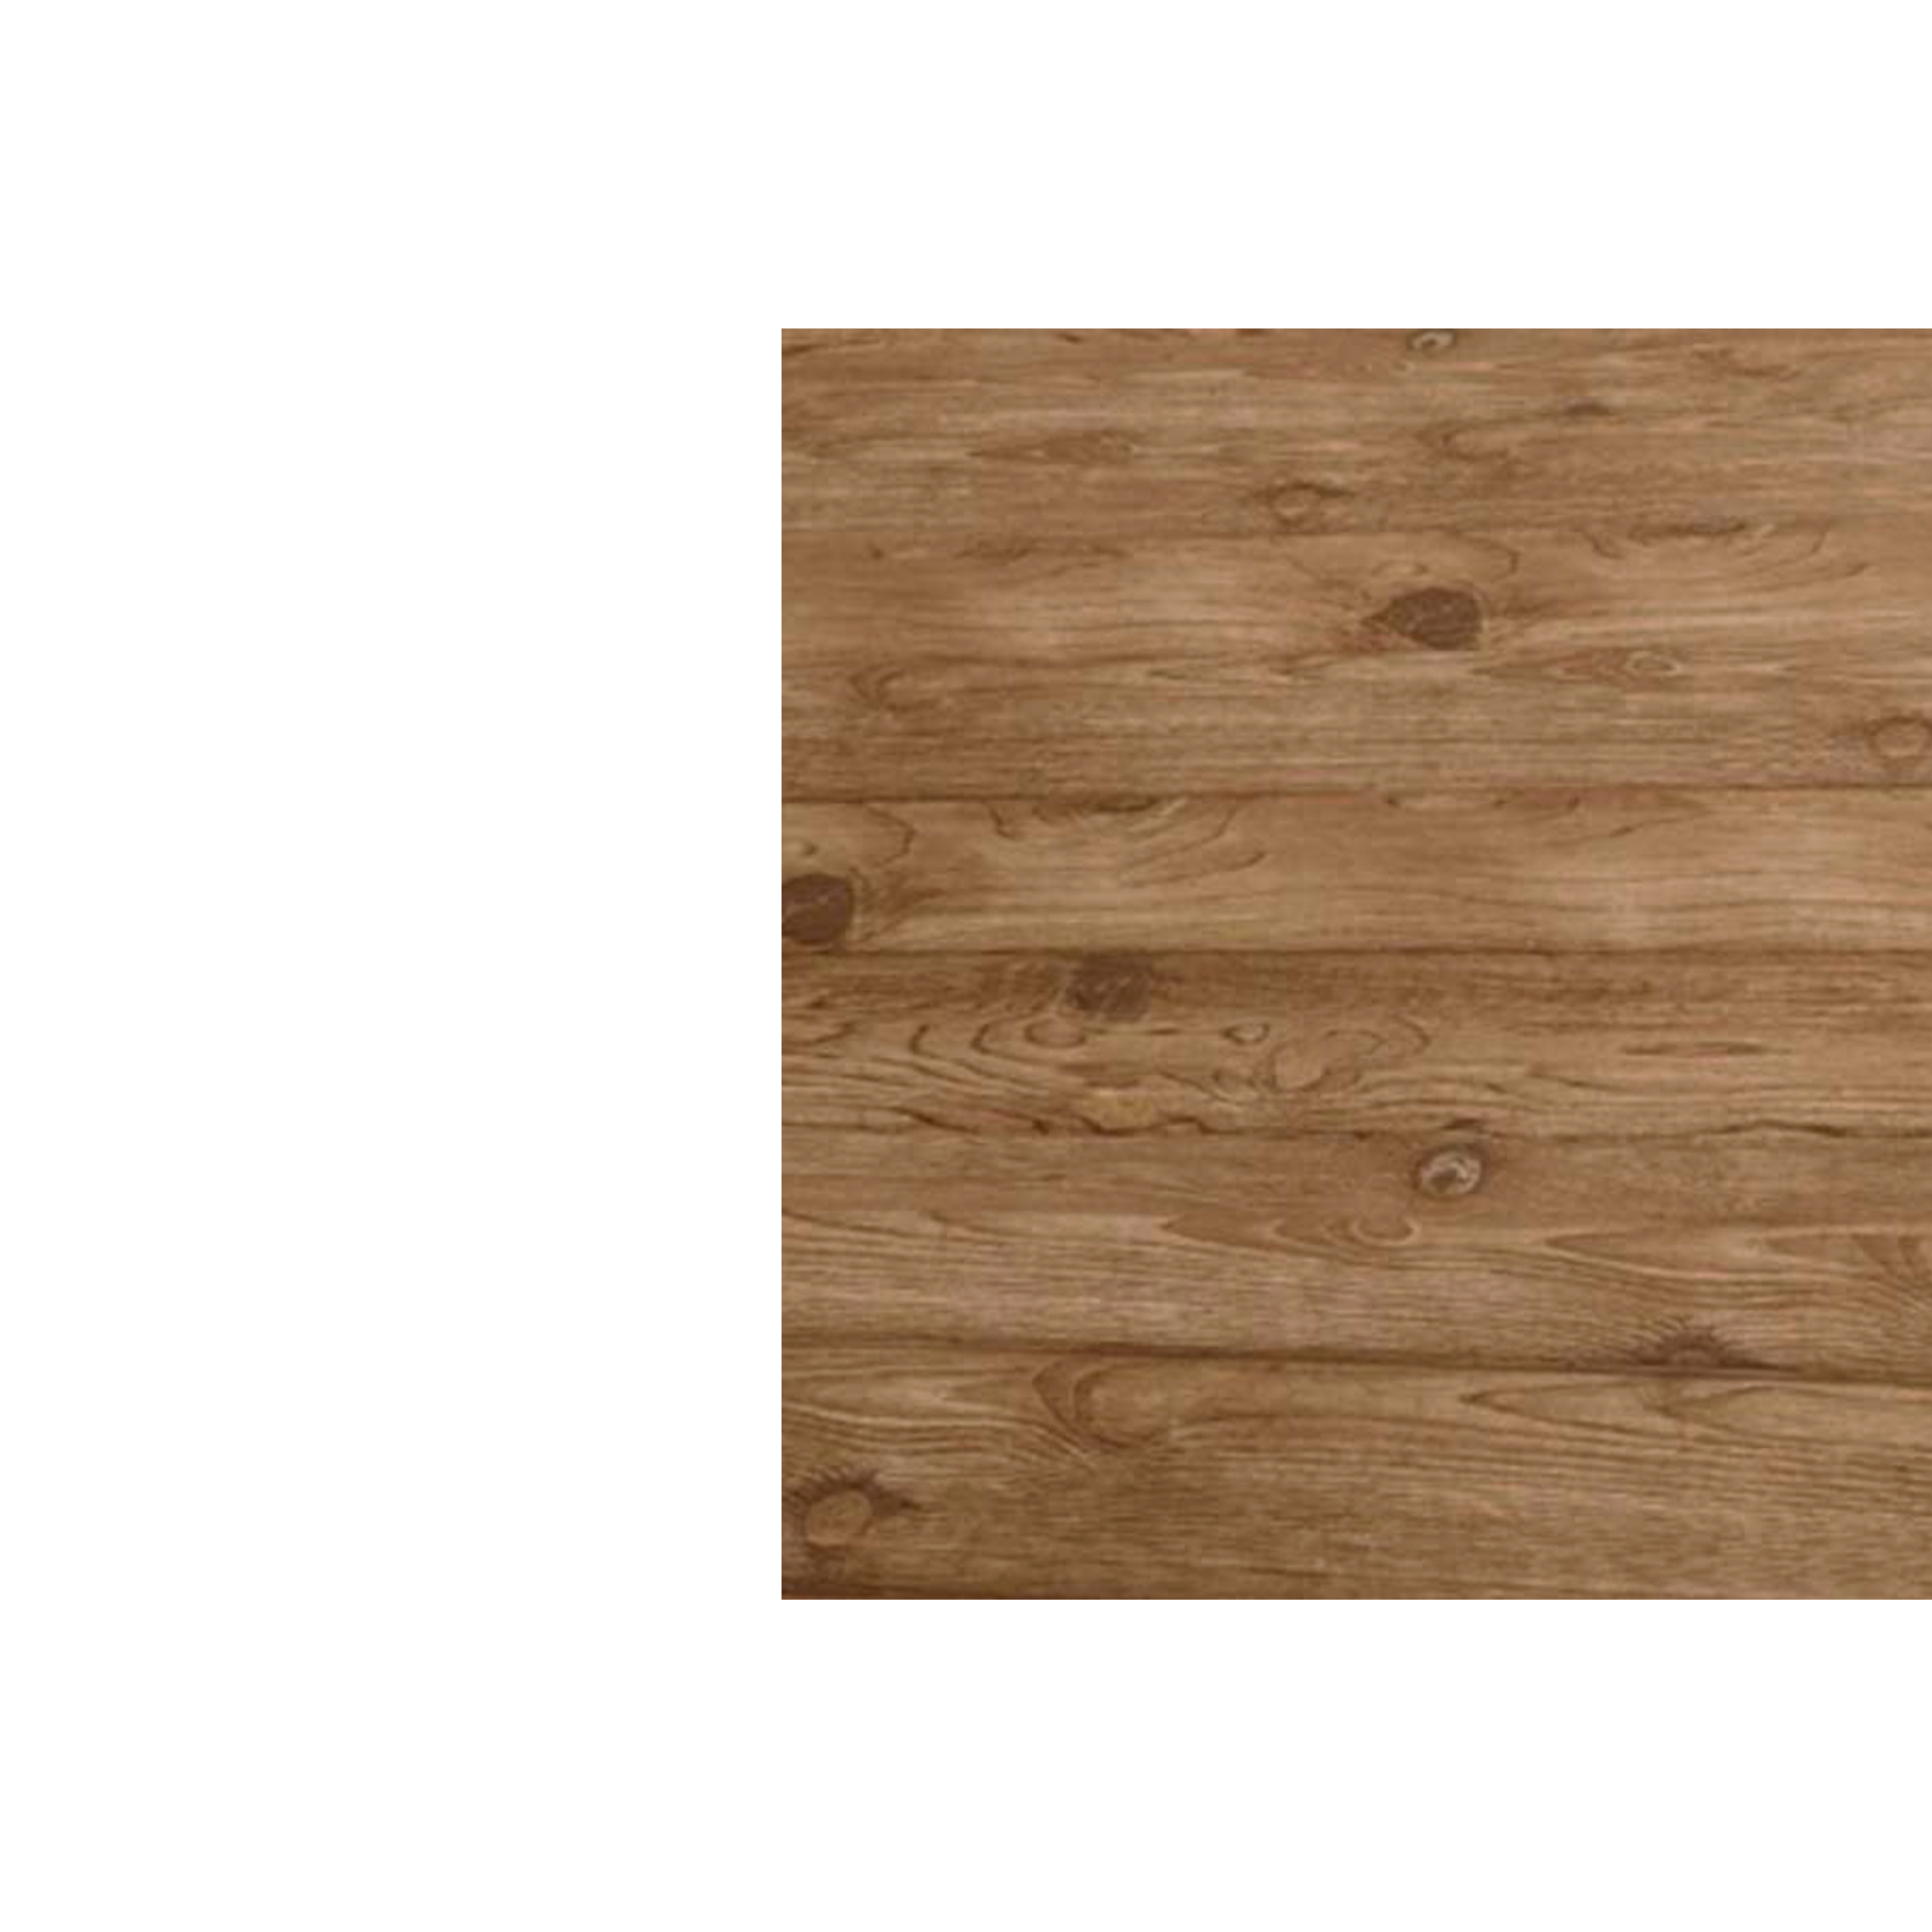 Планка угла наружного сложного Брусnika Золотой орех 3D 0,45 мм Printech Доборные элементы для сайдинга Кровля Сервис